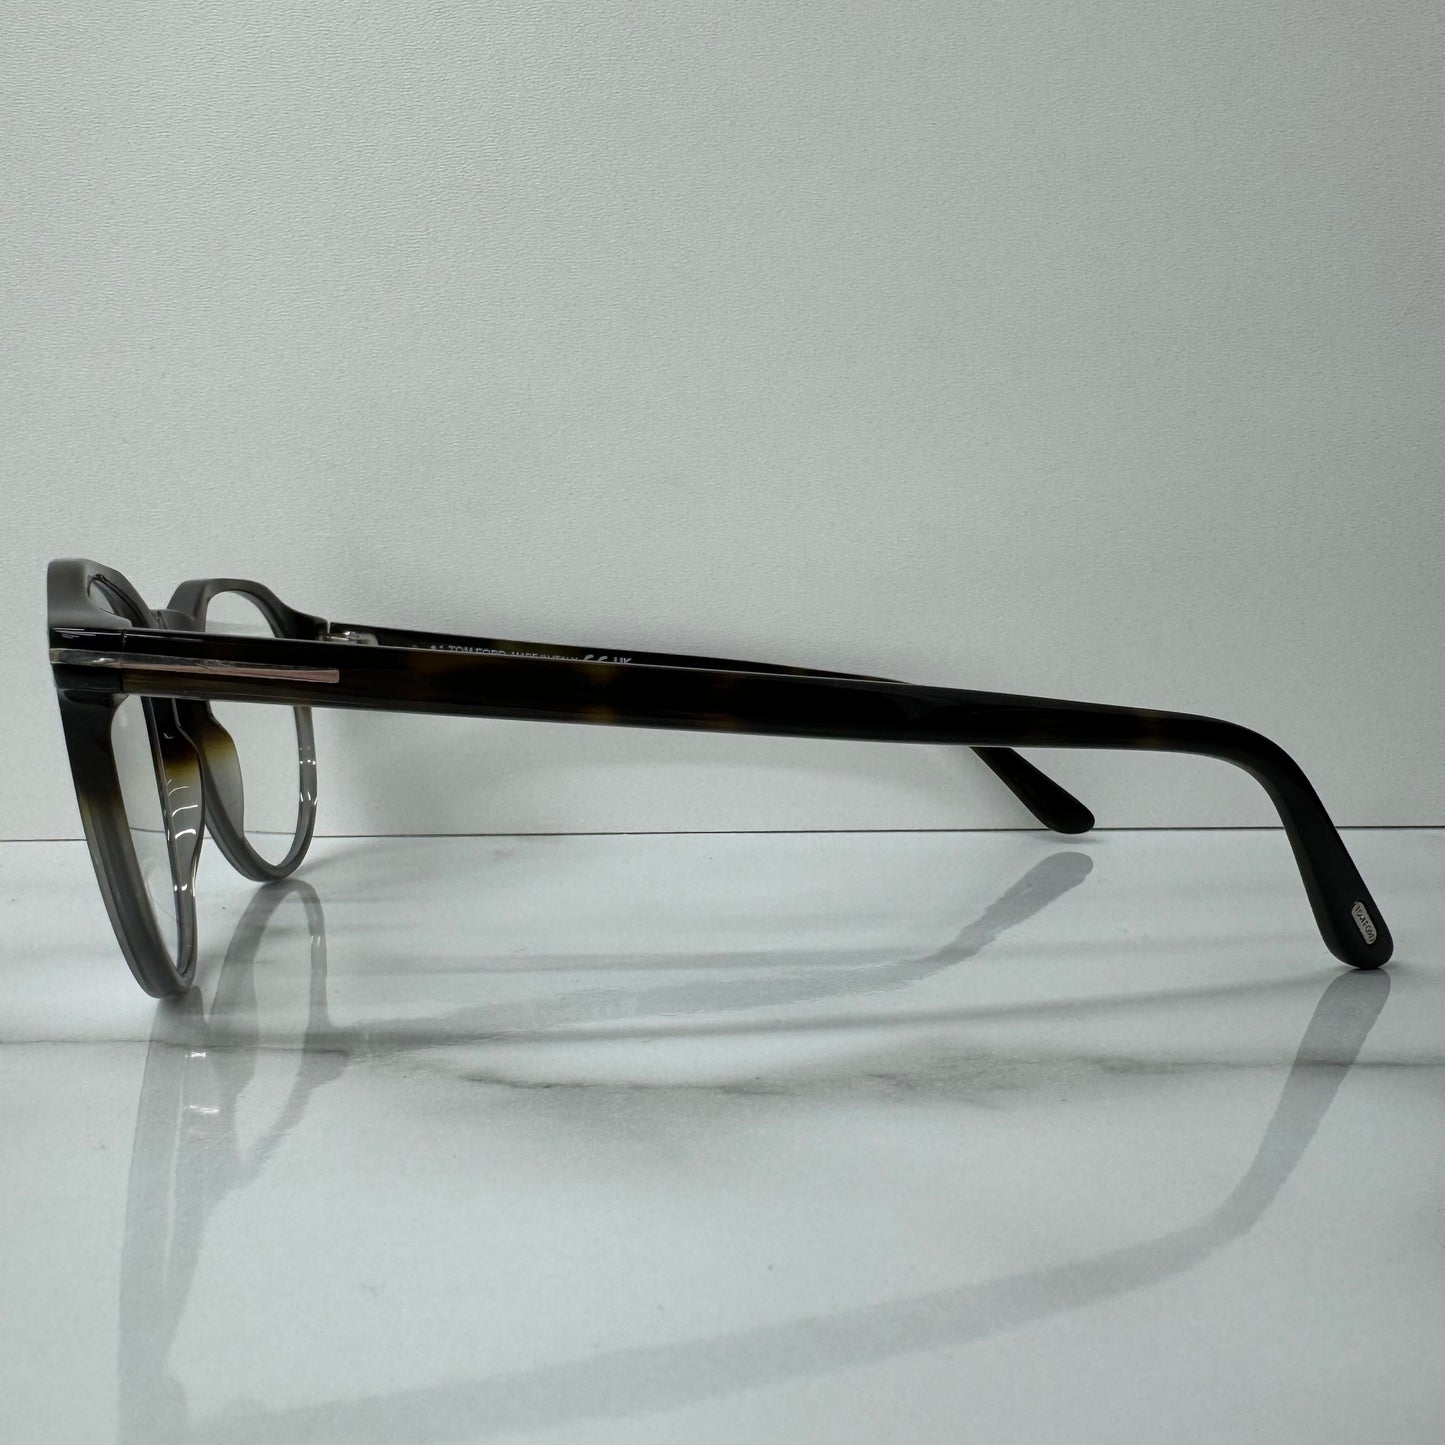 Tom Ford Glasses Frames TF5833 056 Unisex Tortoise Shell Clear Round Eyeglasses